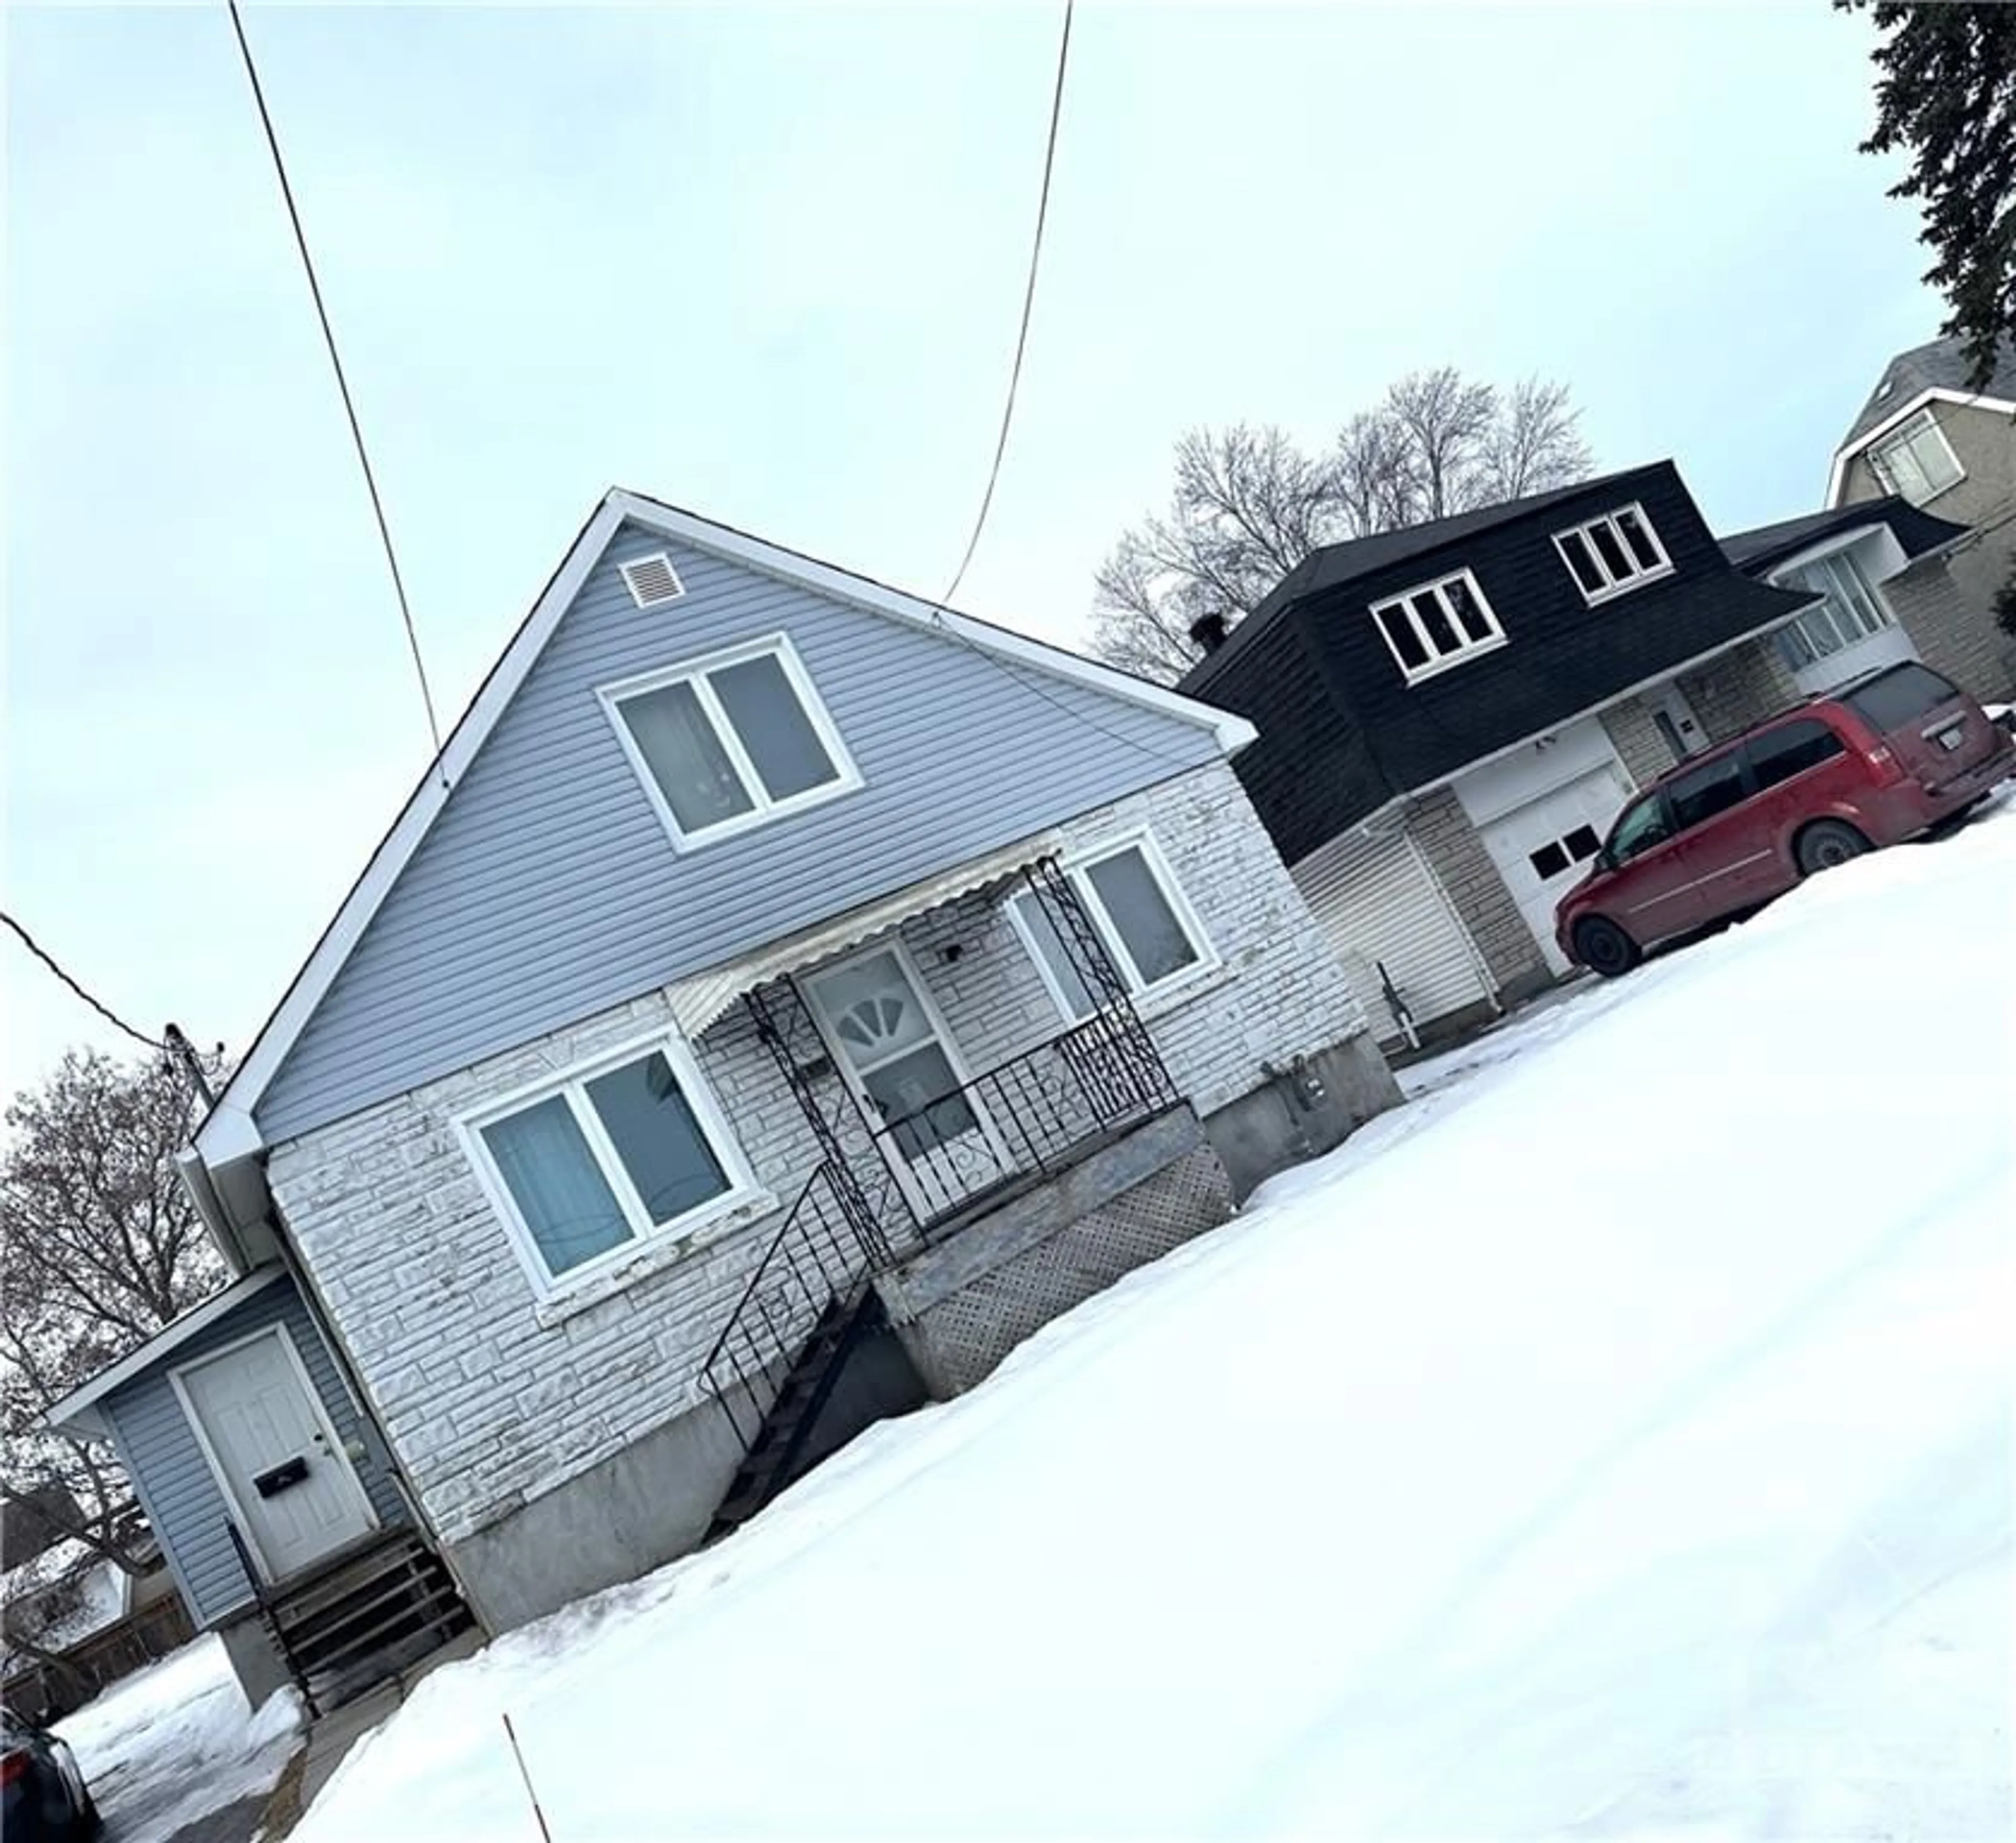 Frontside or backside of a home for 1146 GABRIEL St, Gloucester Ontario K1C 1K8